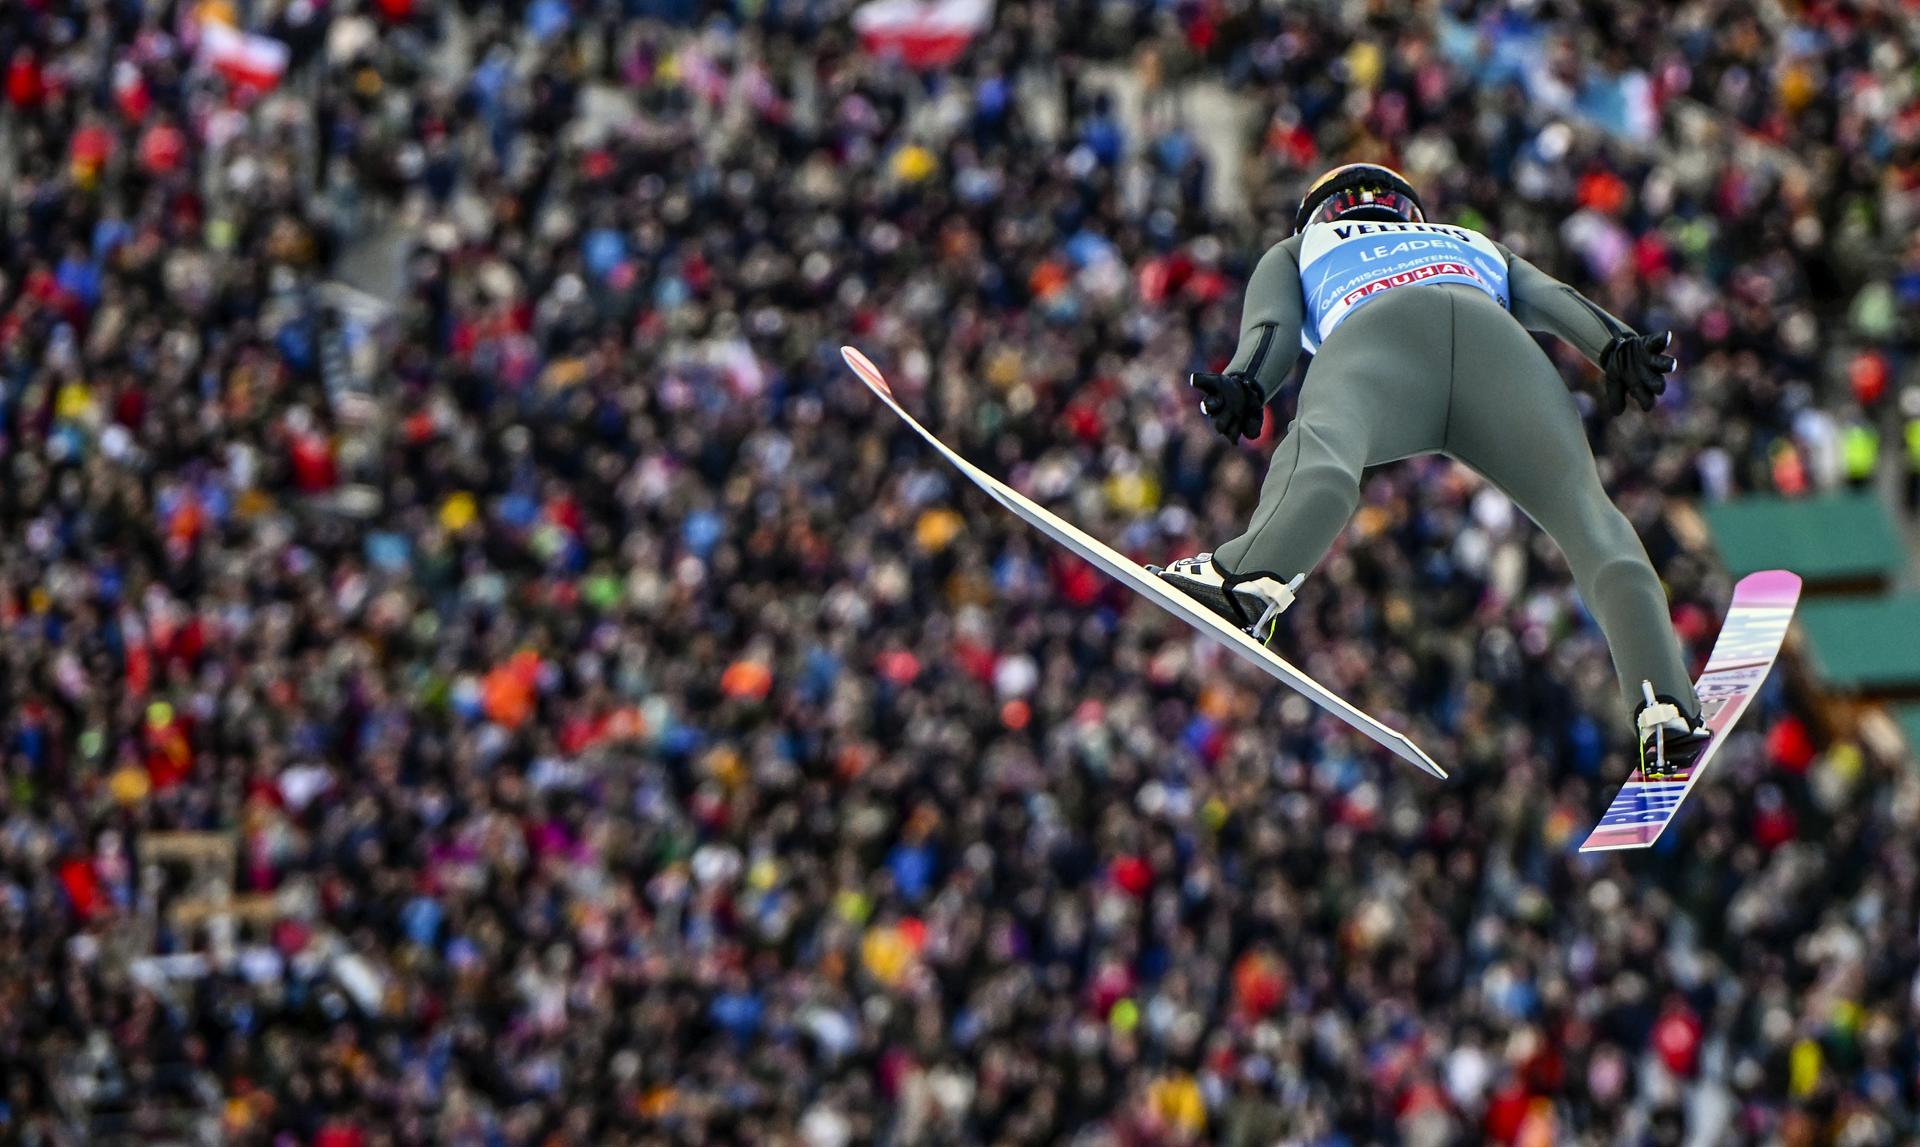 El noruego Halvor Egner Granerud en un salto de esquí en Garmisch Partenkirchen